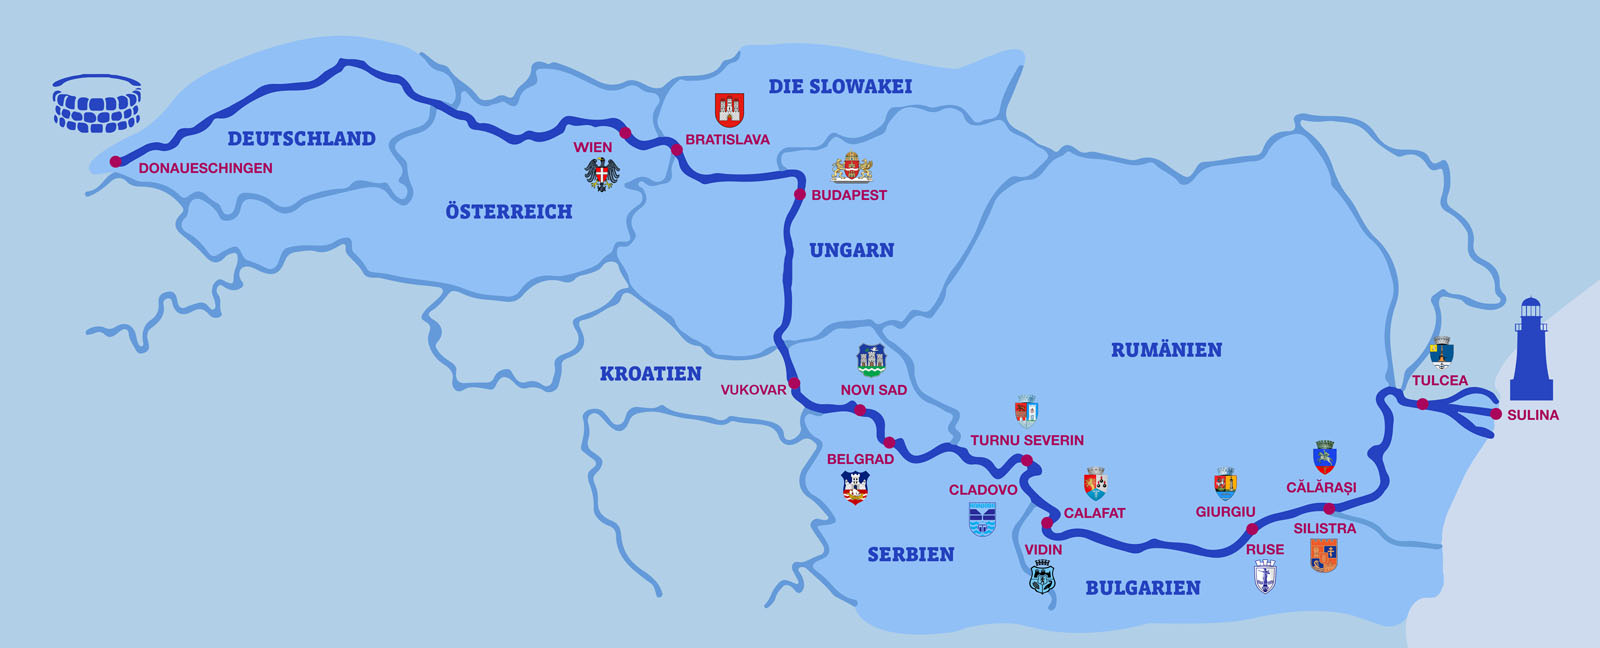 Slika pokazuje države kroz koje protječe rijeka Dunav.